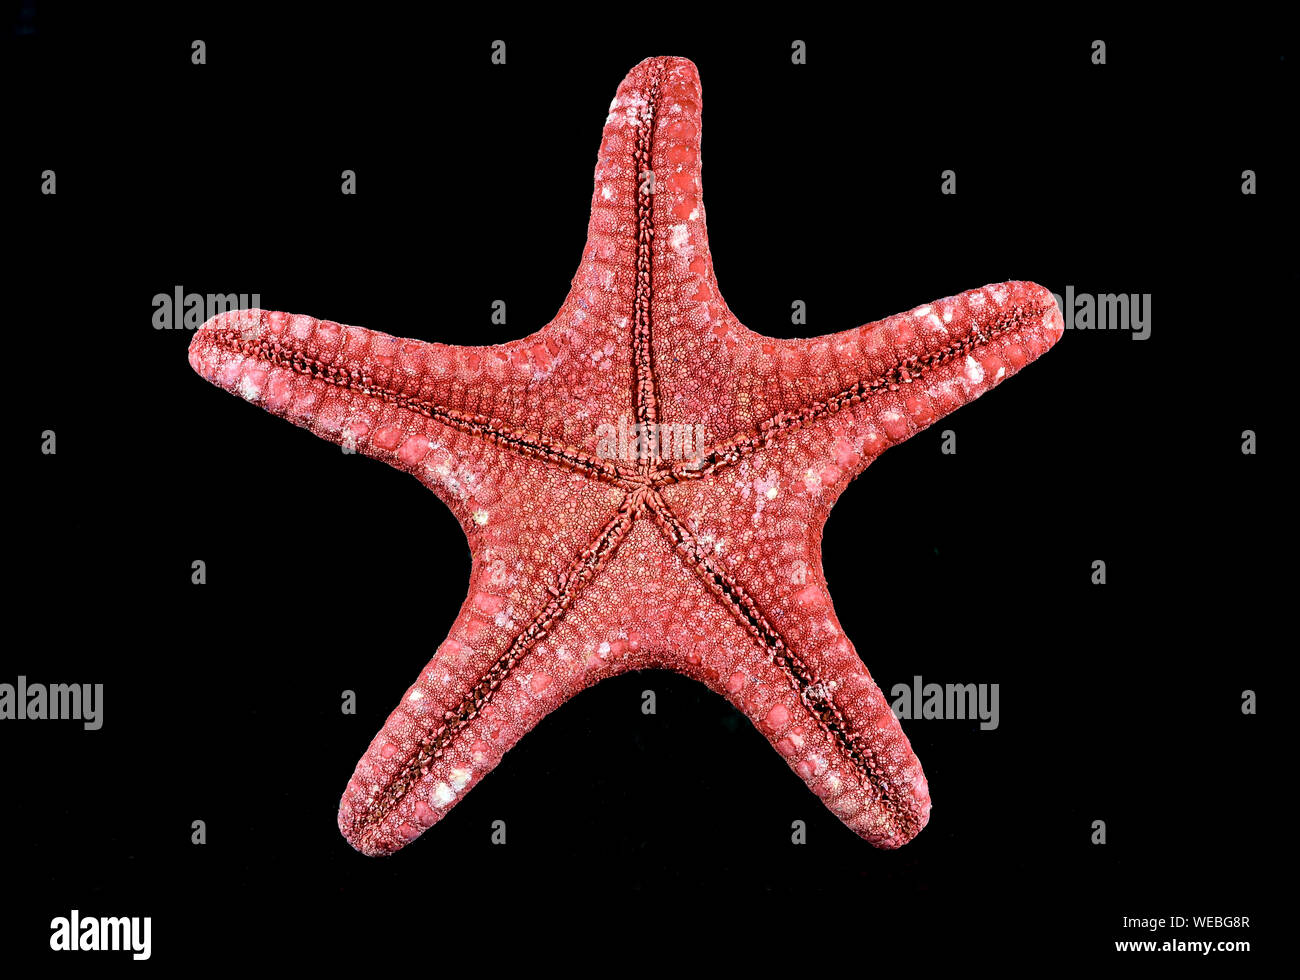 Gros plan de la partie ventrale d'une étoile de mer rouge , espèces marines , isolé sur fond noir, avec le détail du tissu Banque D'Images